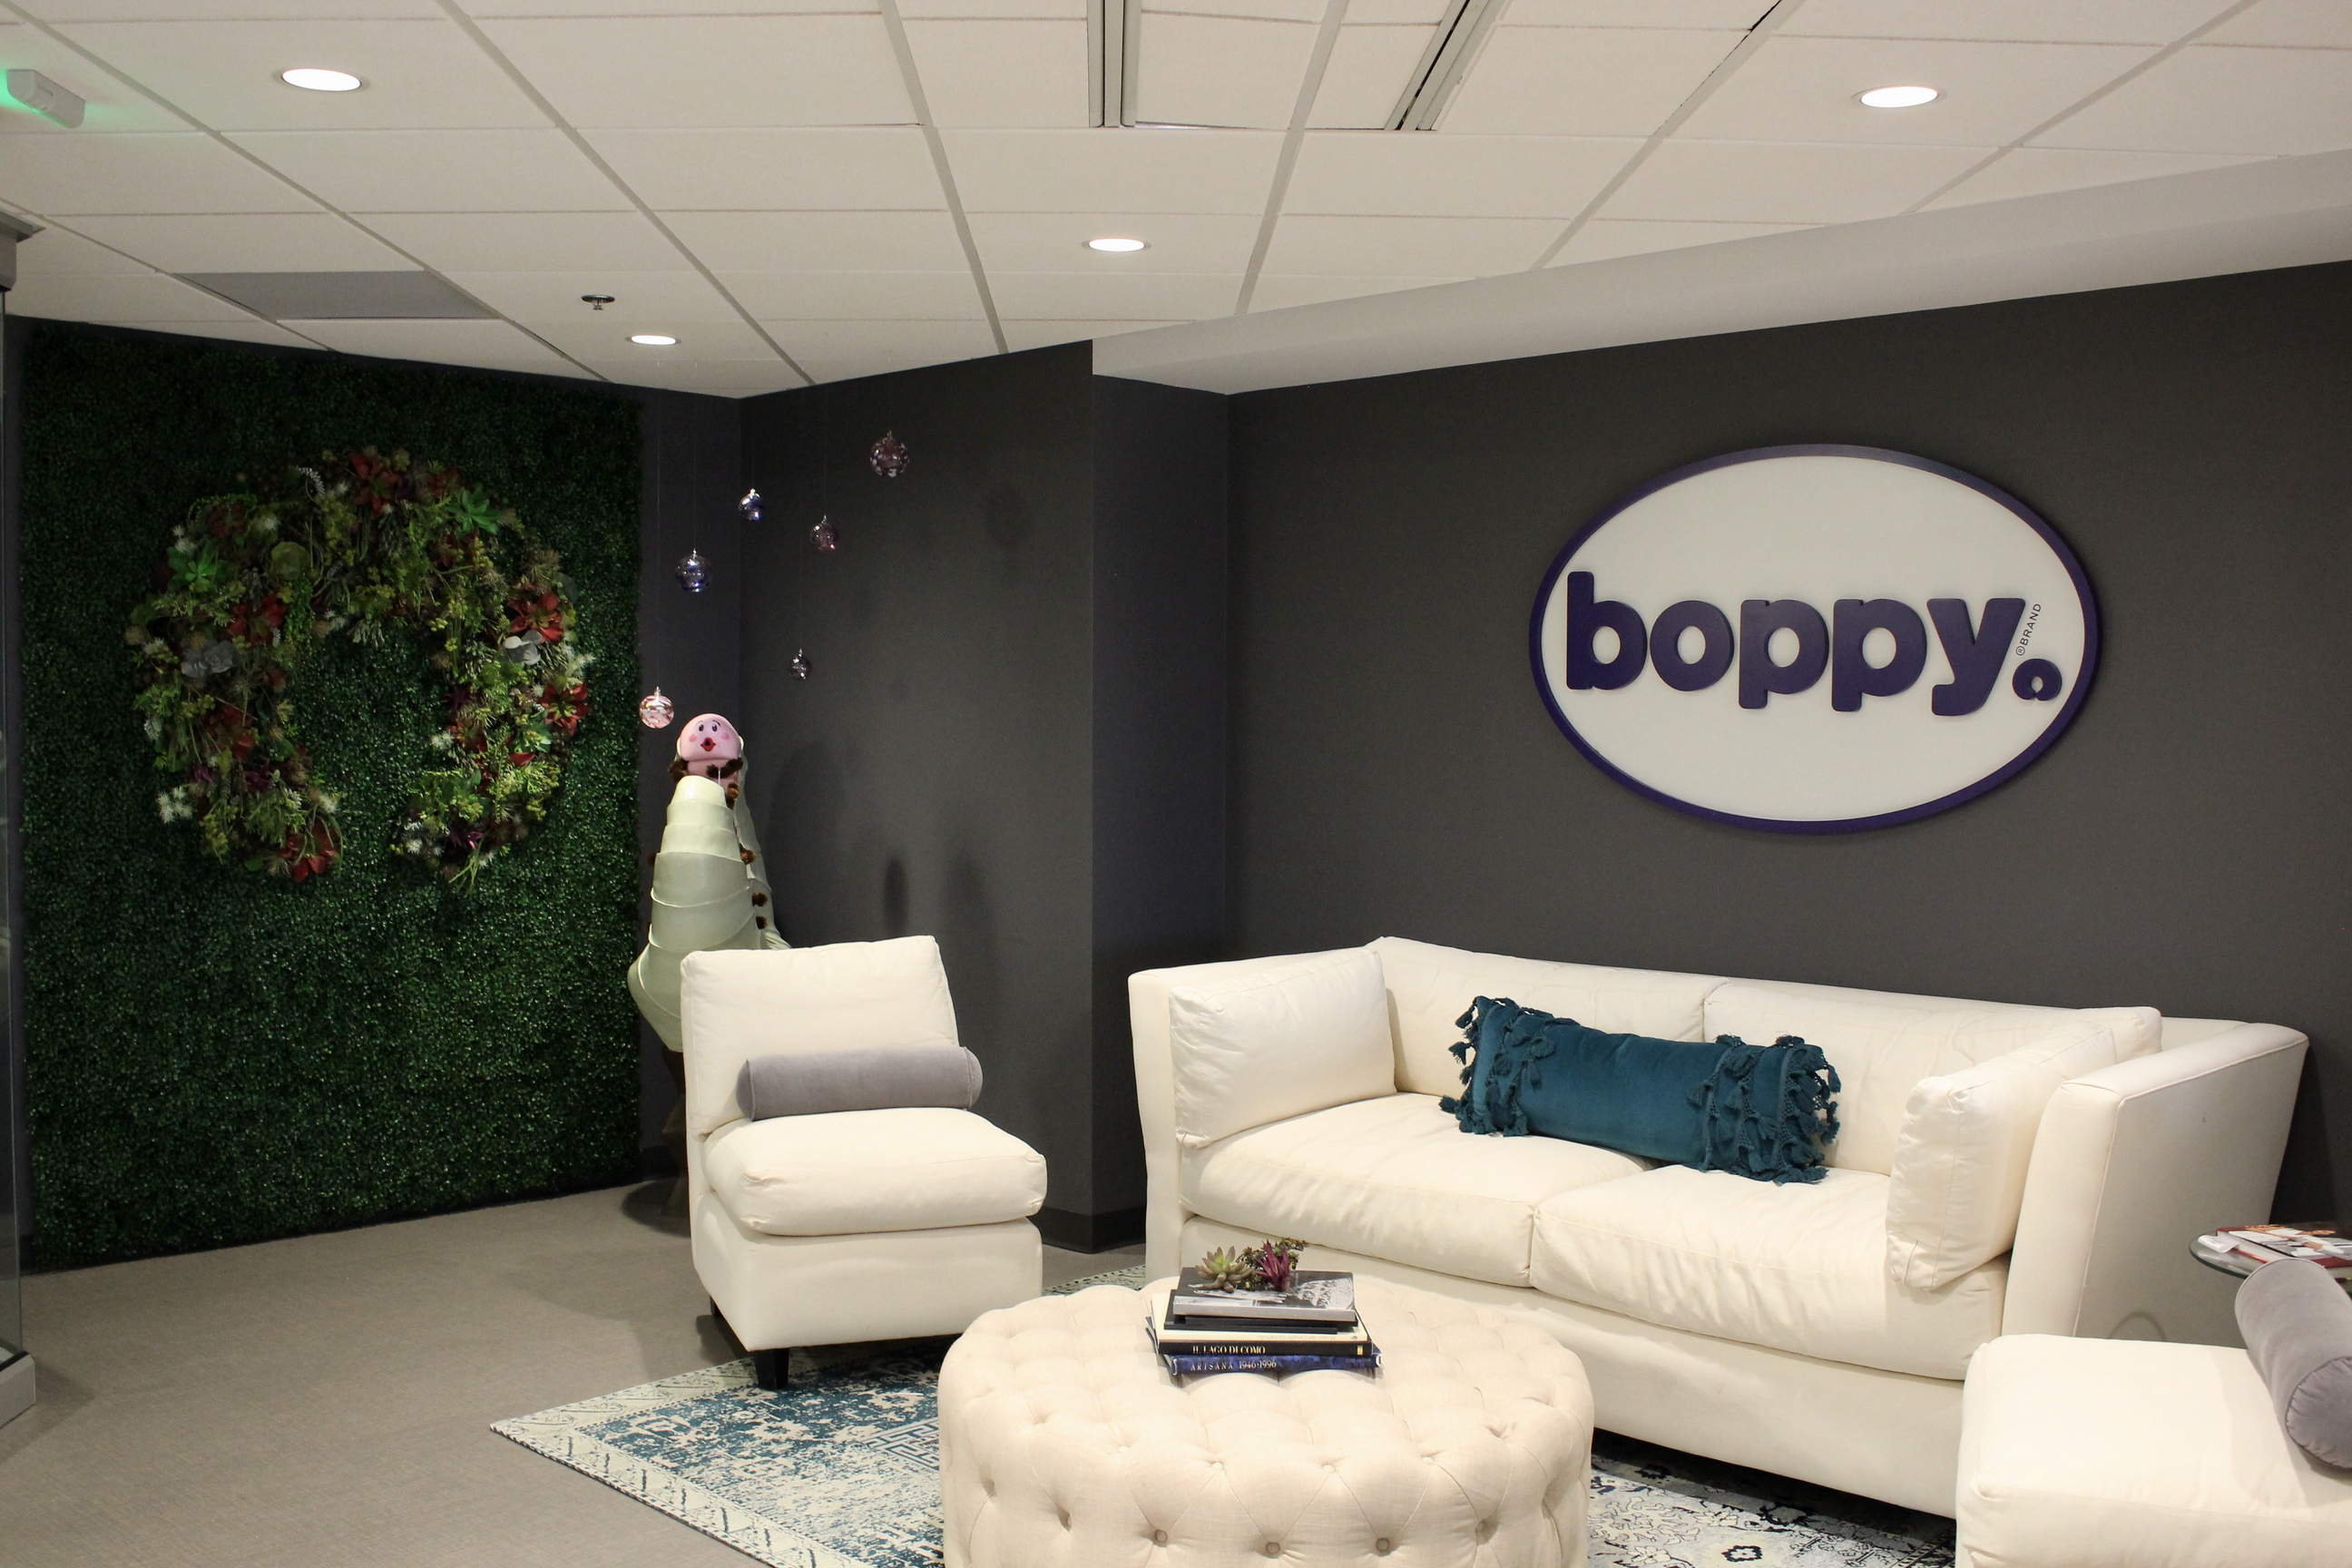 The Boppy Company